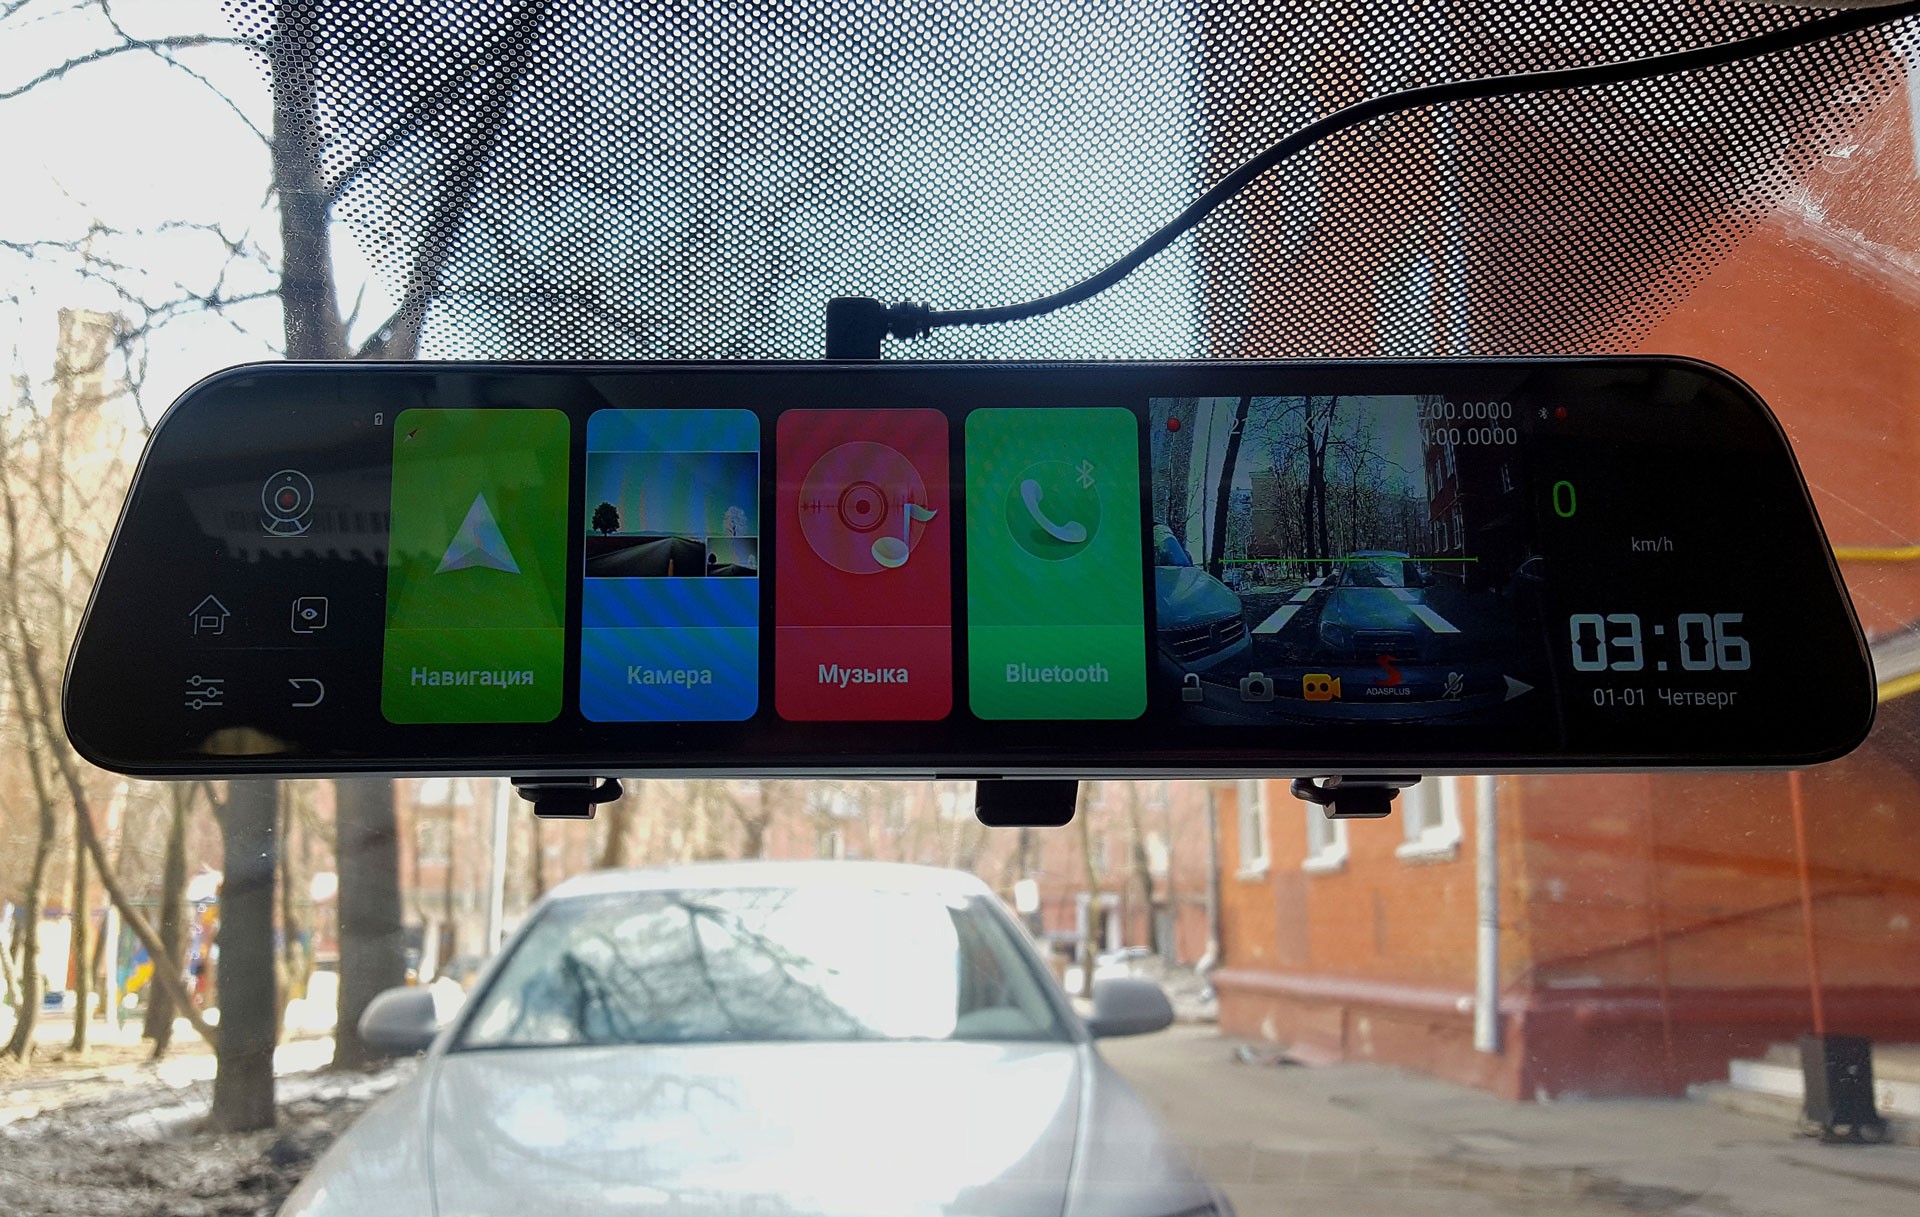 Дооснащаем машину полезными функциями без вмешательства в интерьер. Android-зеркало в автомобиле – насколько это удобно?